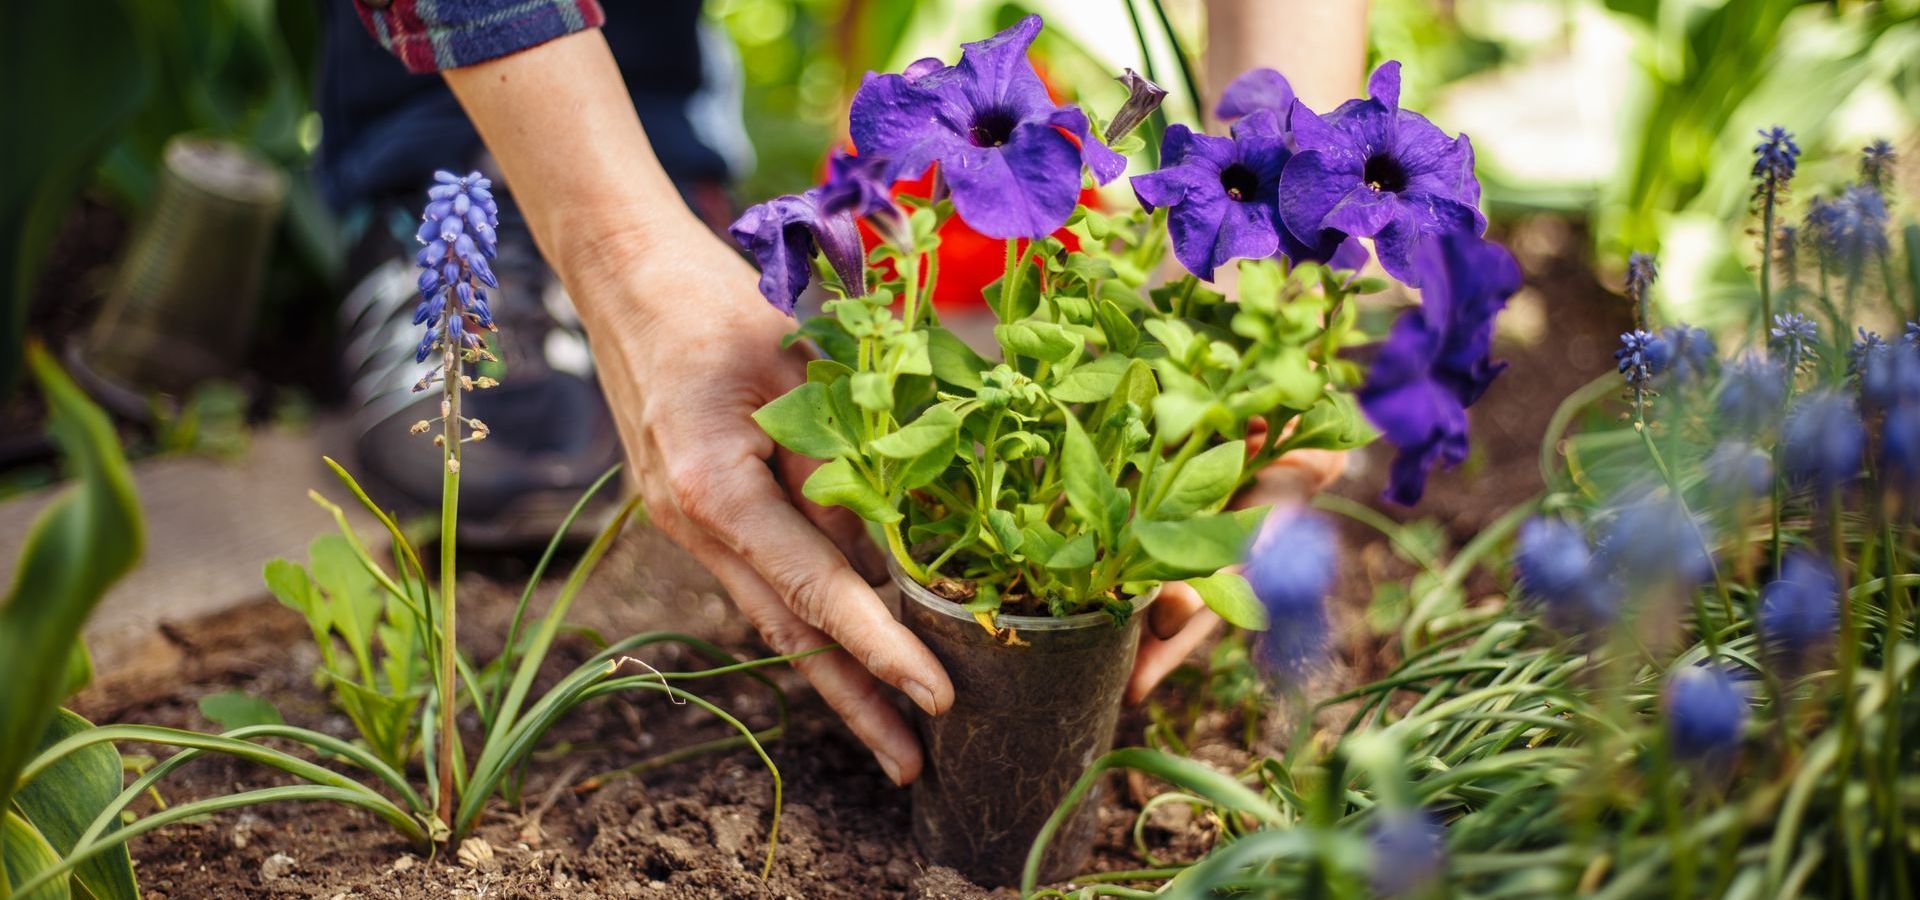 planter jardiner plante petunia dans la terre pendant le printemps fleurs violettes